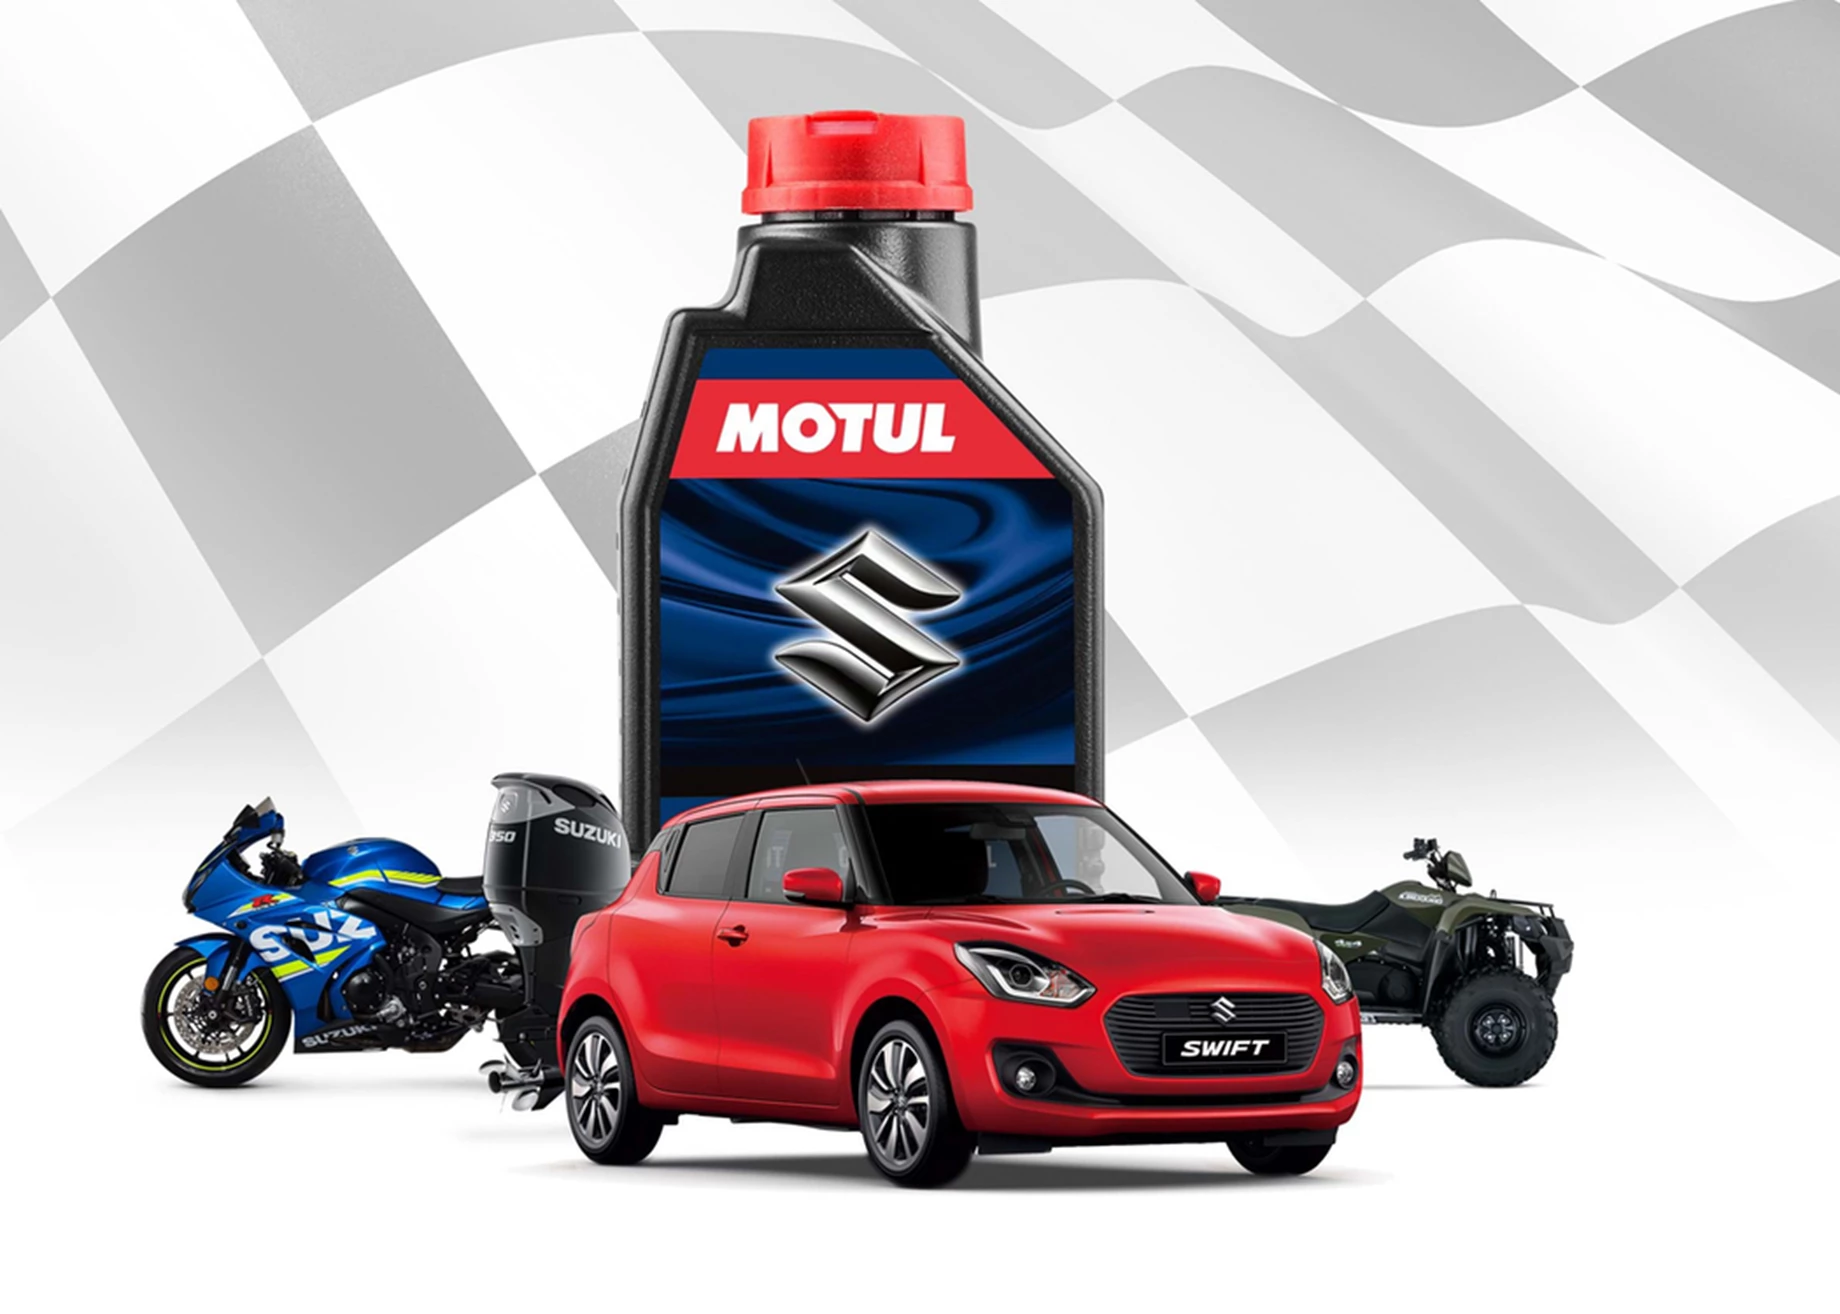 Suzuki range and Motul oil